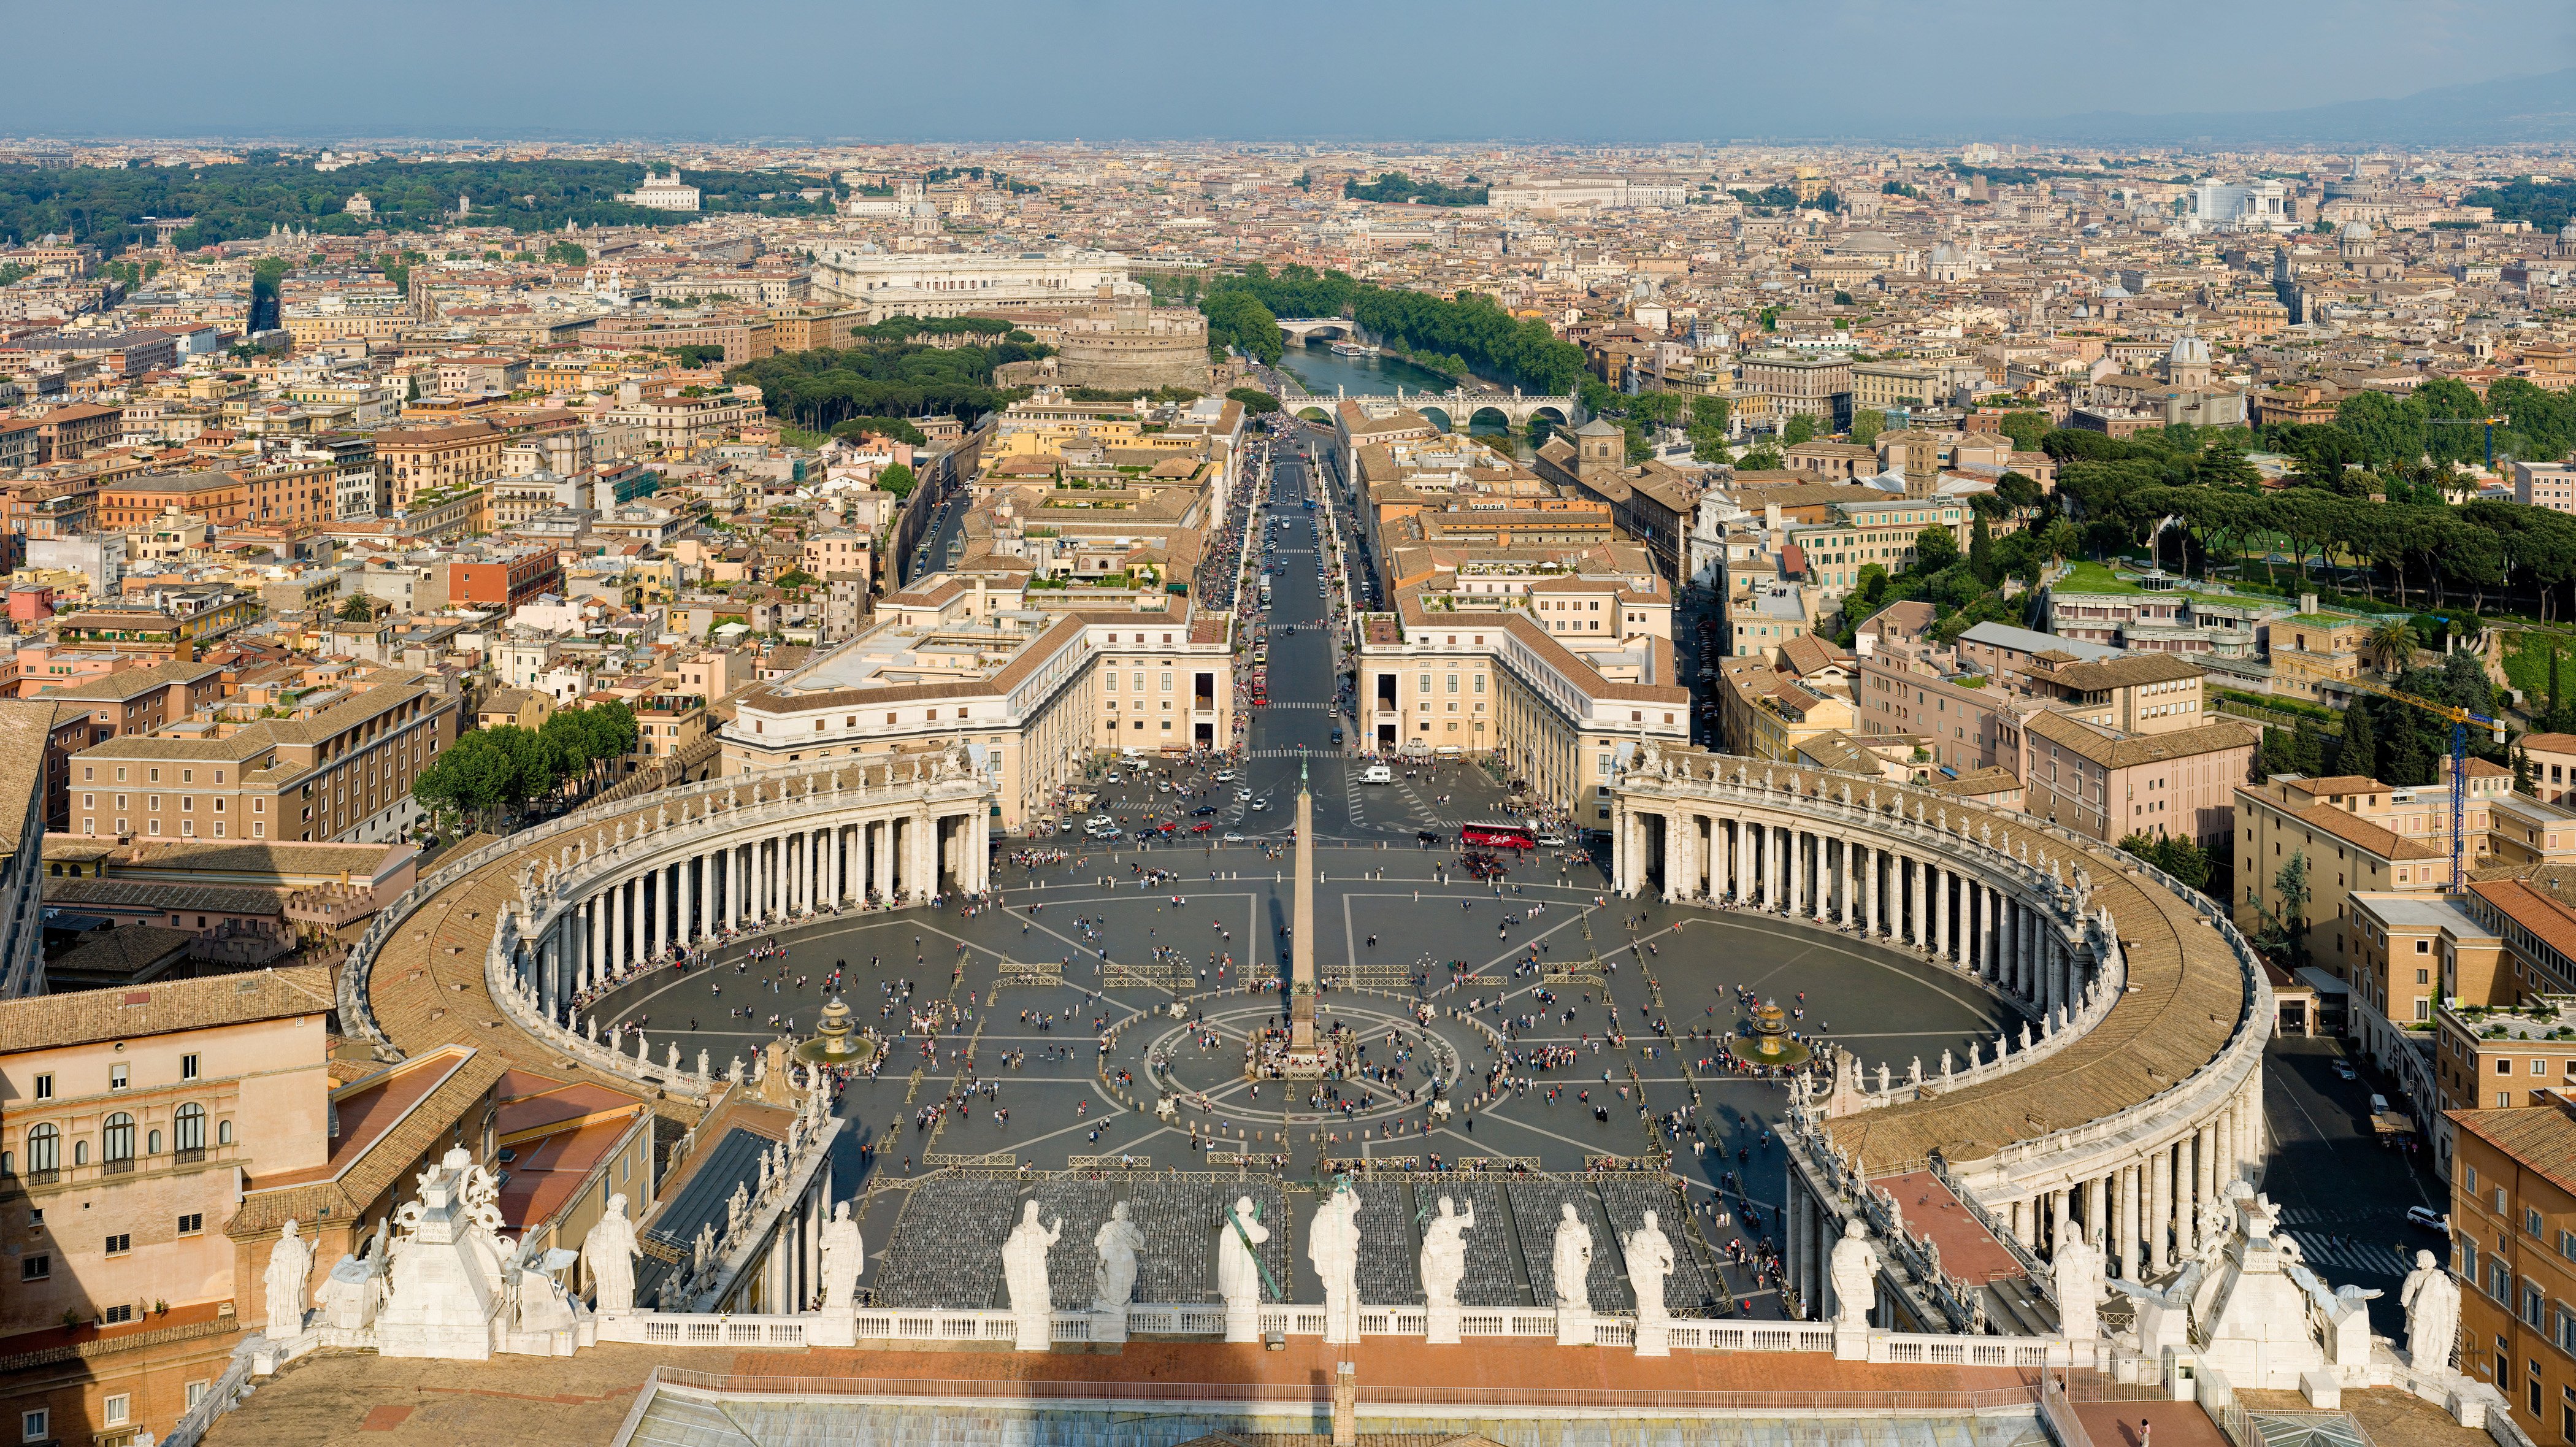 Cardenales y obispos ya no podrán vivir gratis en el Vaticano: el Papa empezará a cobrar alquiler